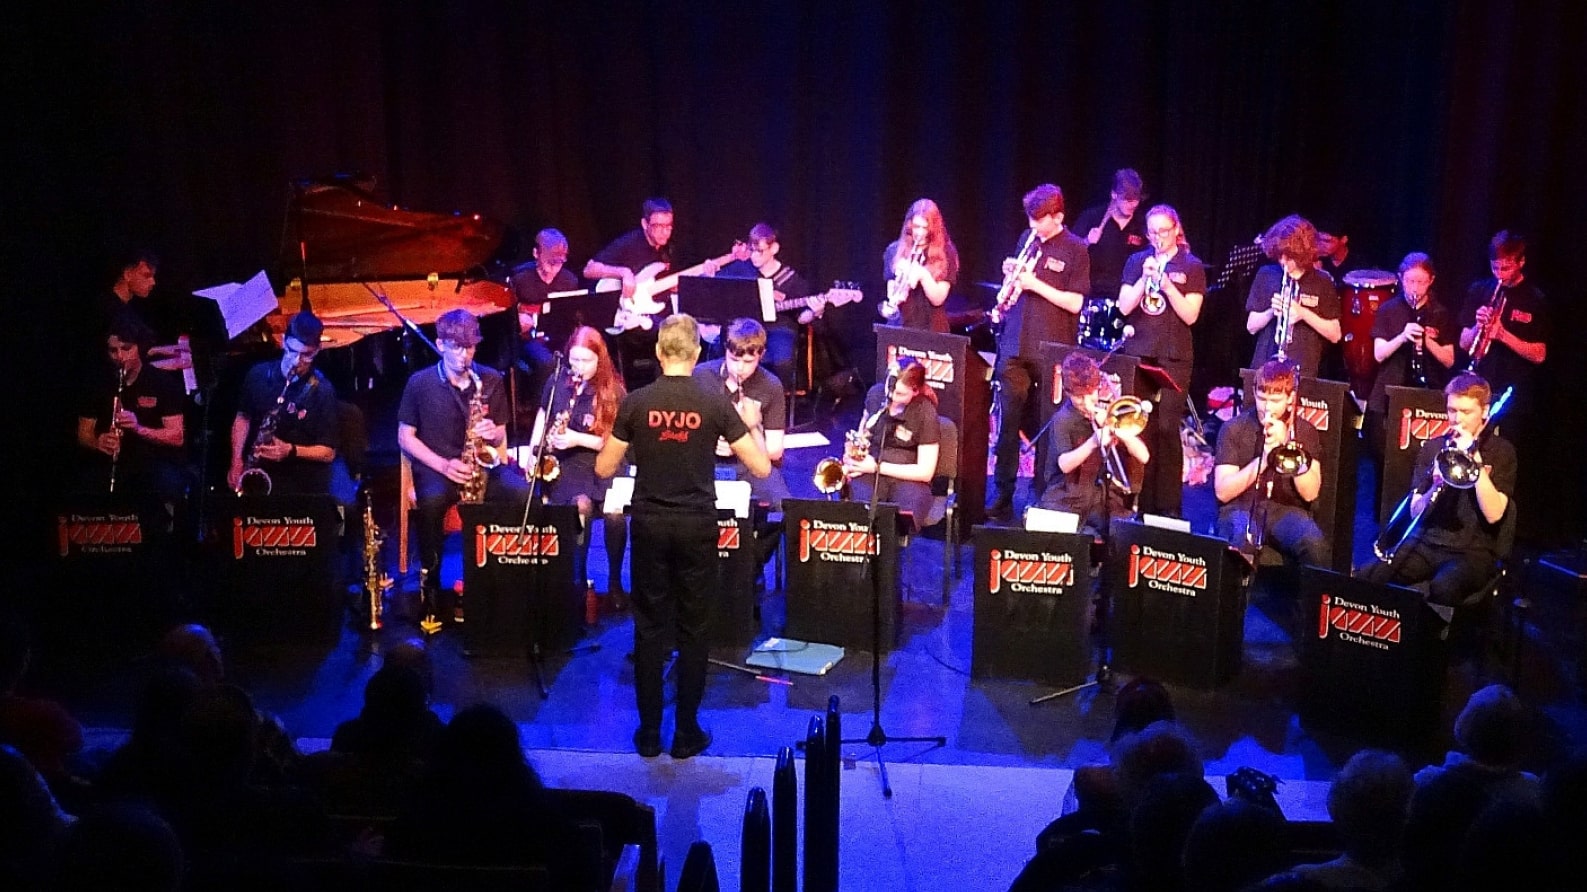 Concert de Devon Youth Jazz Orchestra sur la scène de Cybèle